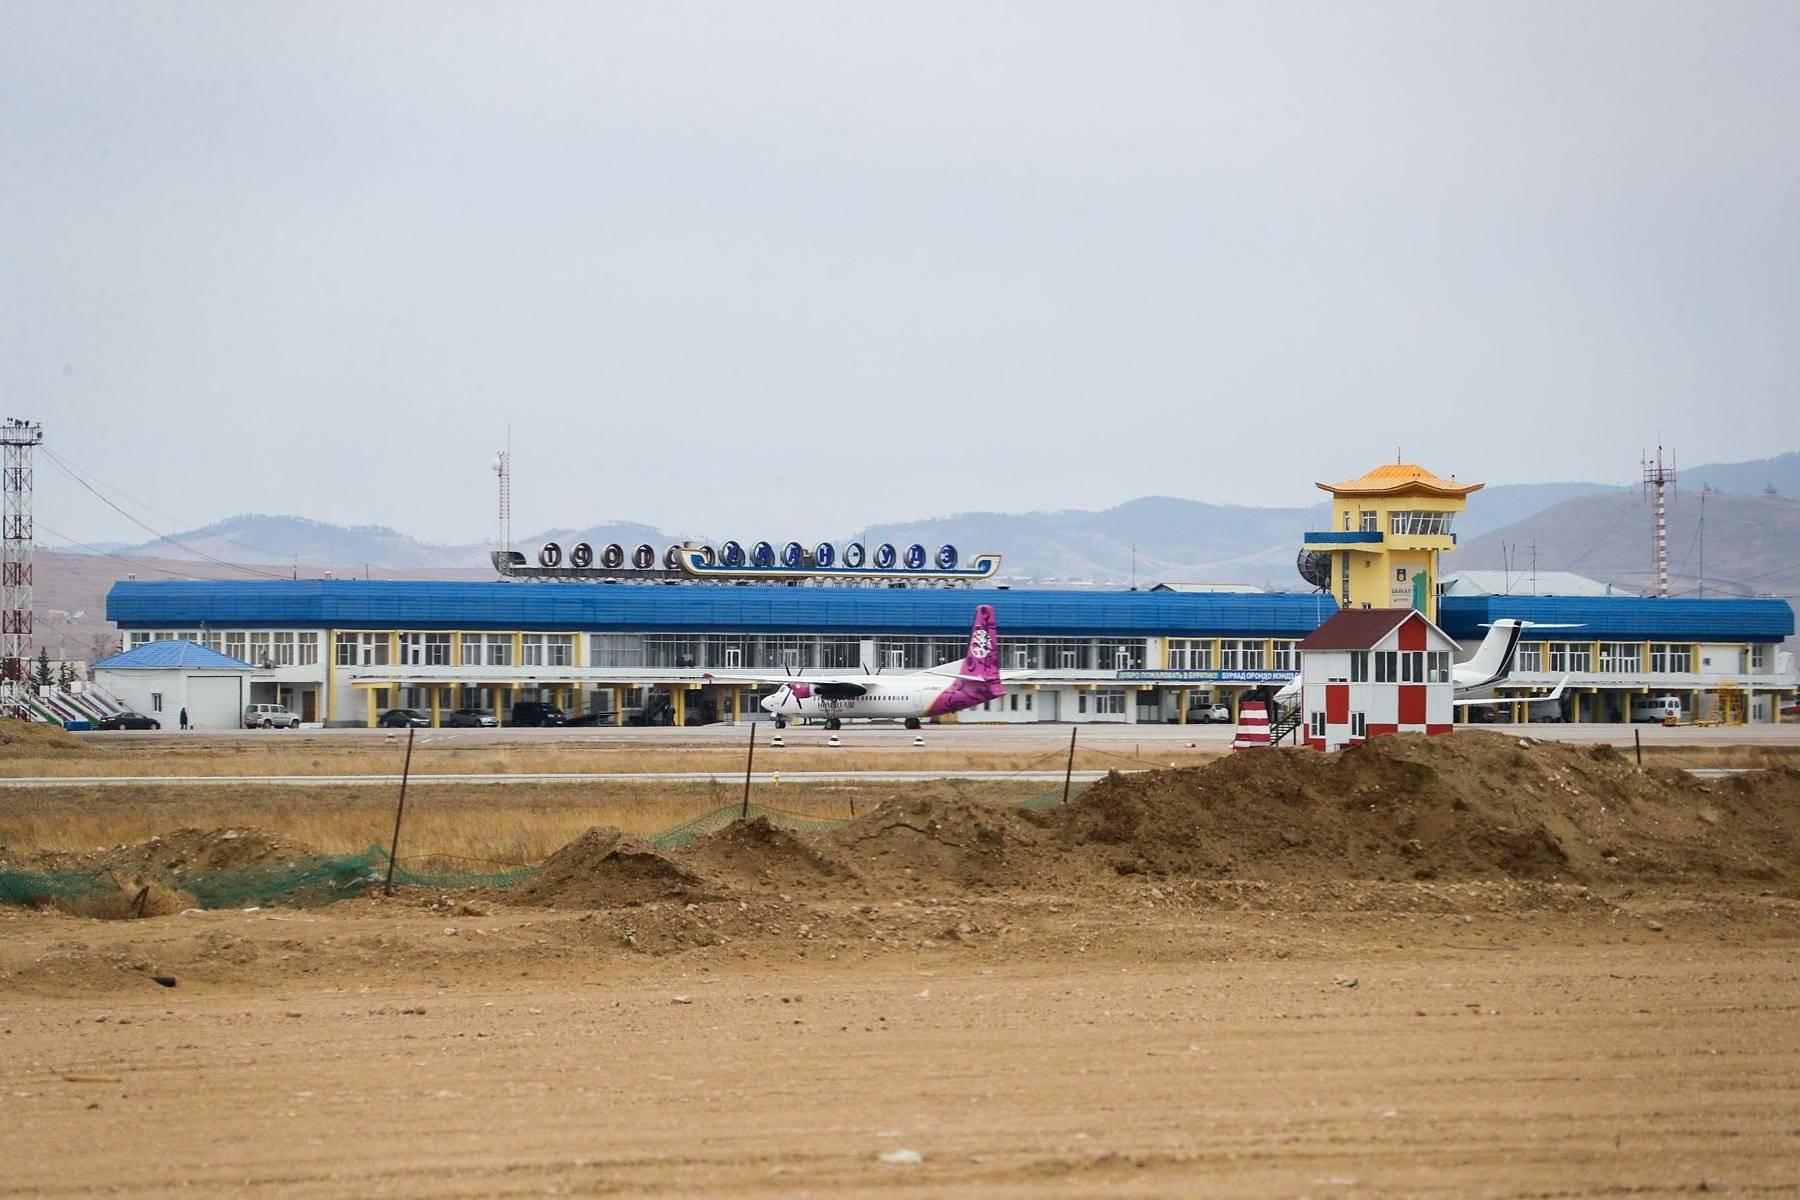 Аэропорт рядом с байкалом